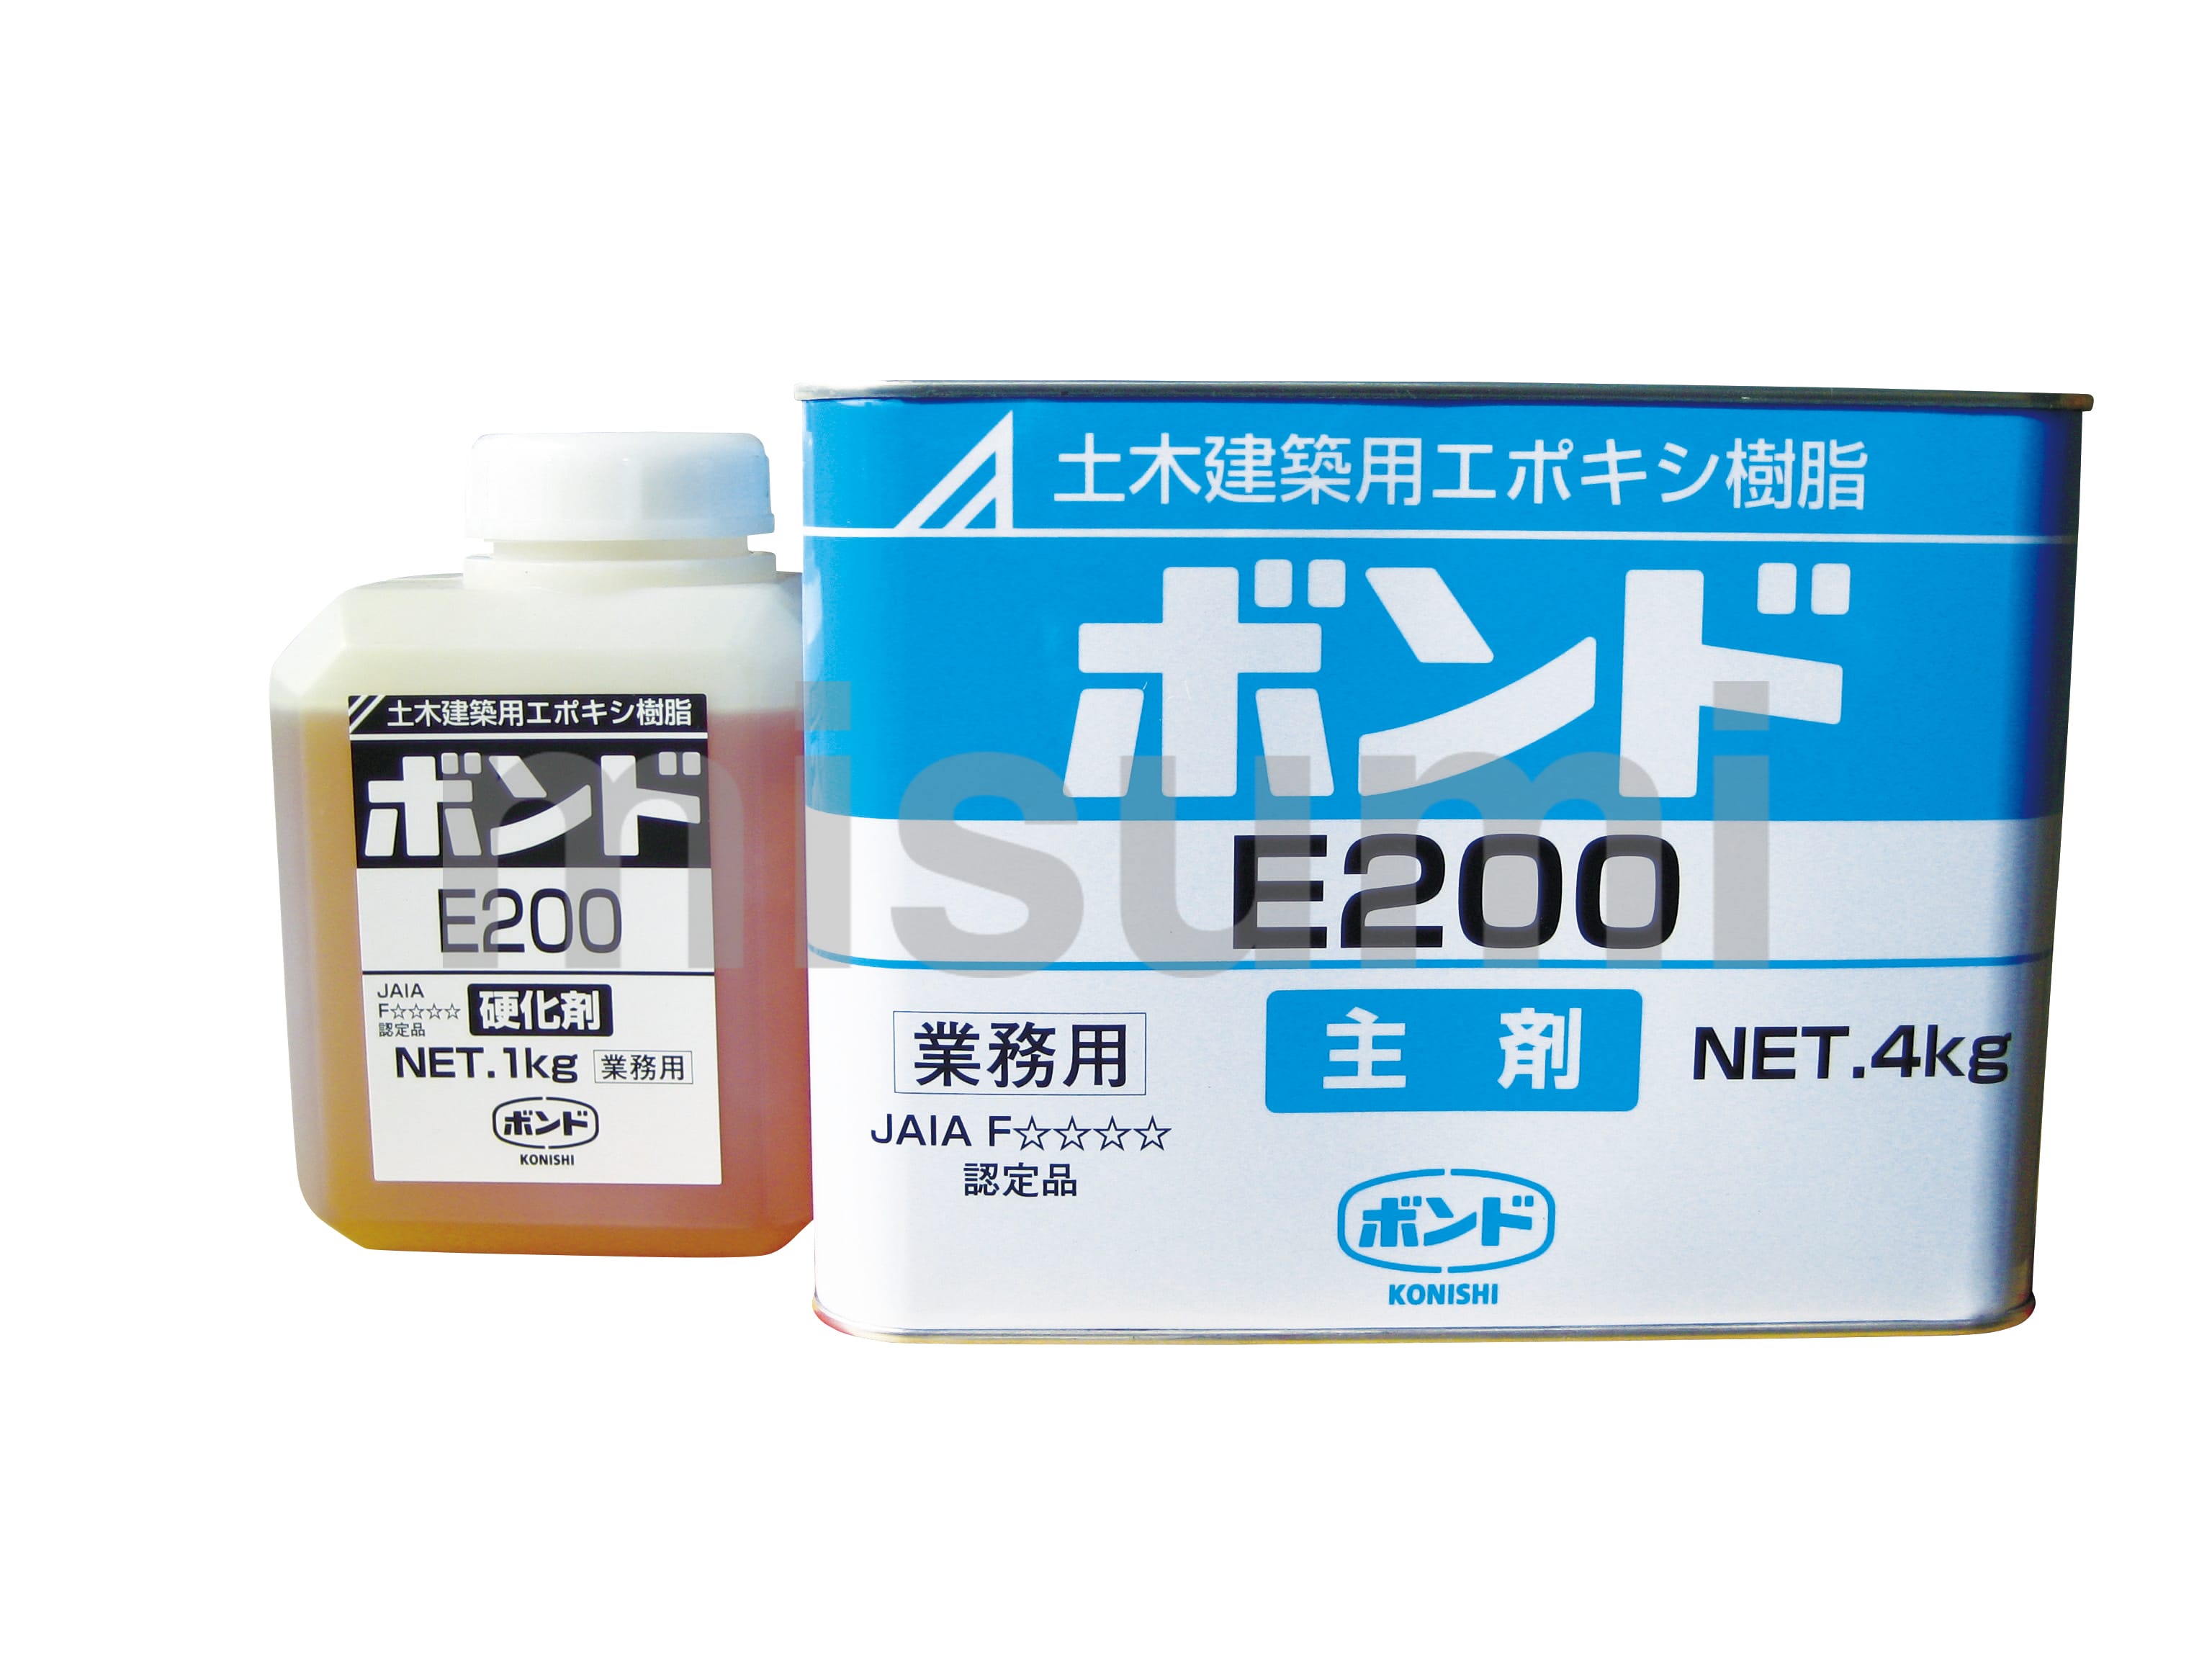 モルタルコンクリート塗継用ボンド E200 コニシ MISUMI(ミスミ)